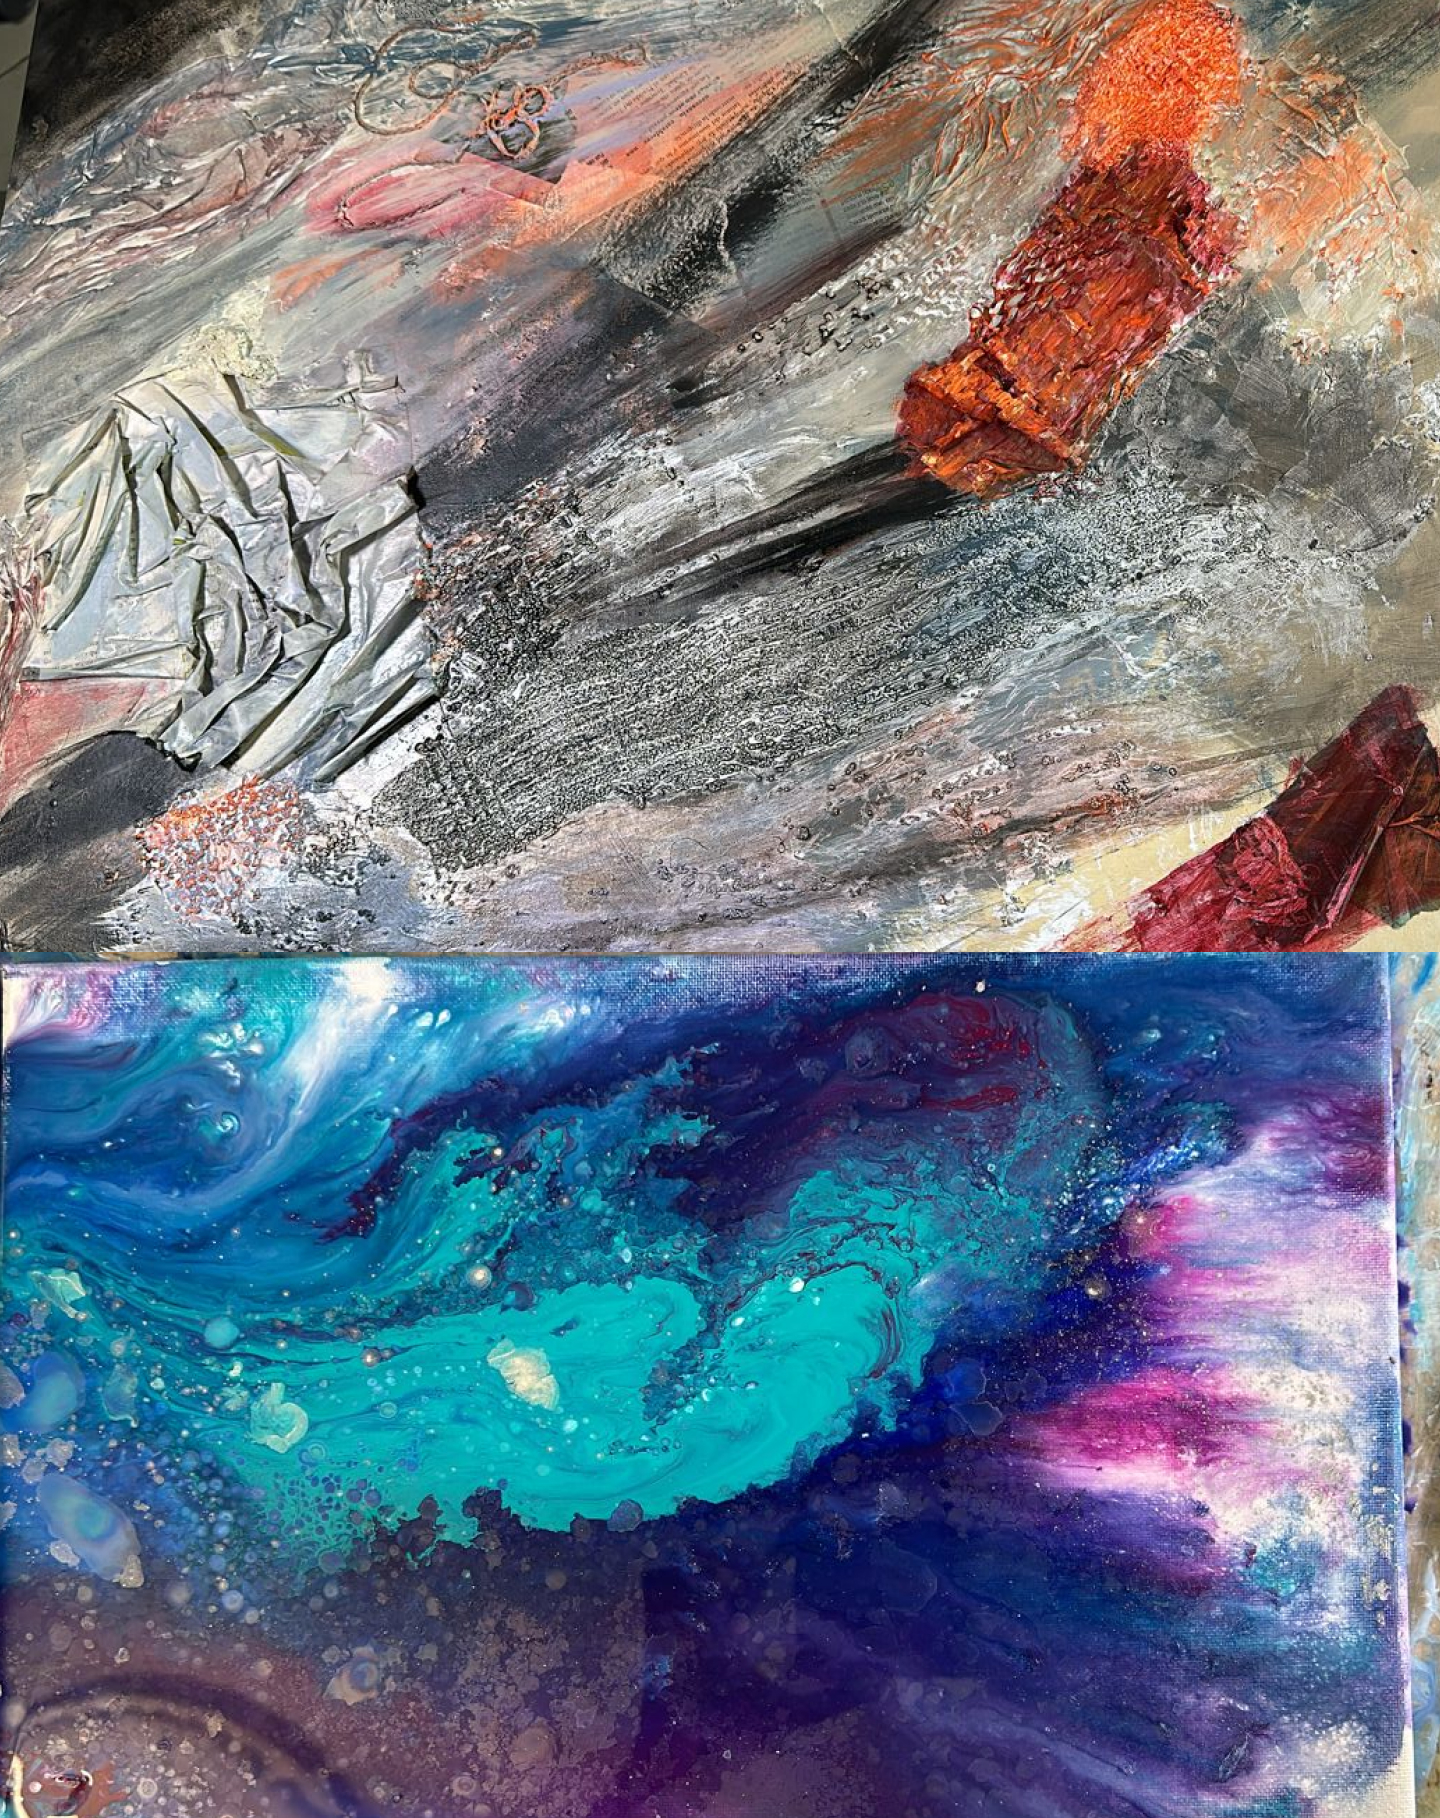 Arte abstracto (collage) y arte fluido en acrílico (3 obras)